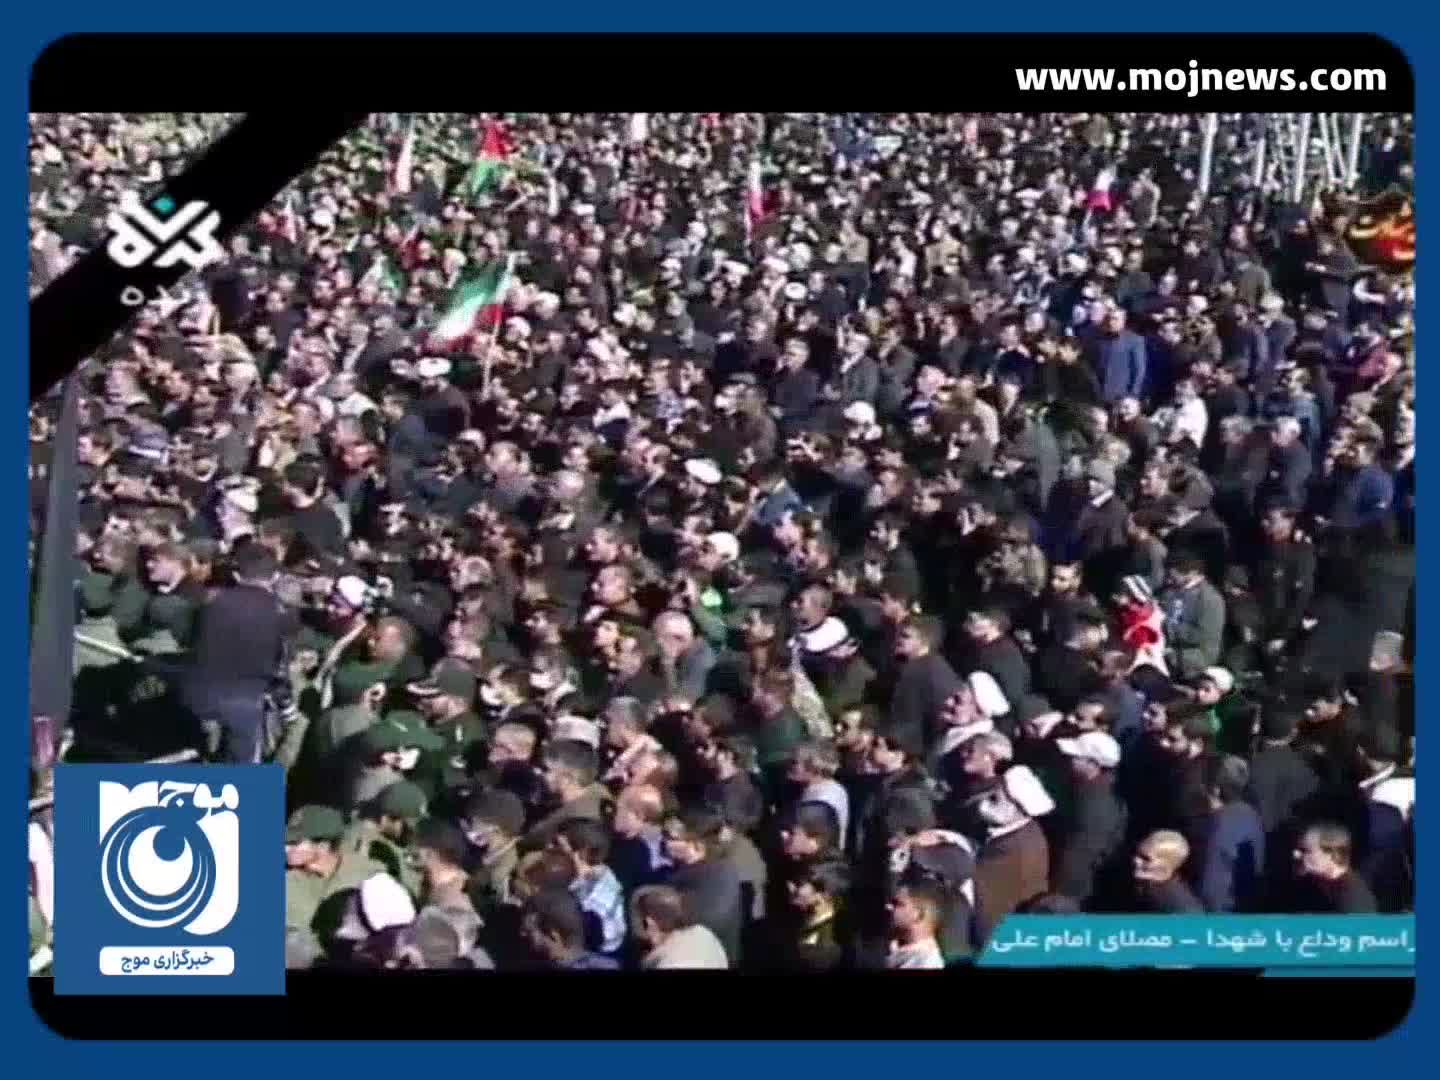  سیل جمعیت در مراسم تشییع شهدای حادثه تروریستی کرمان + فیلم